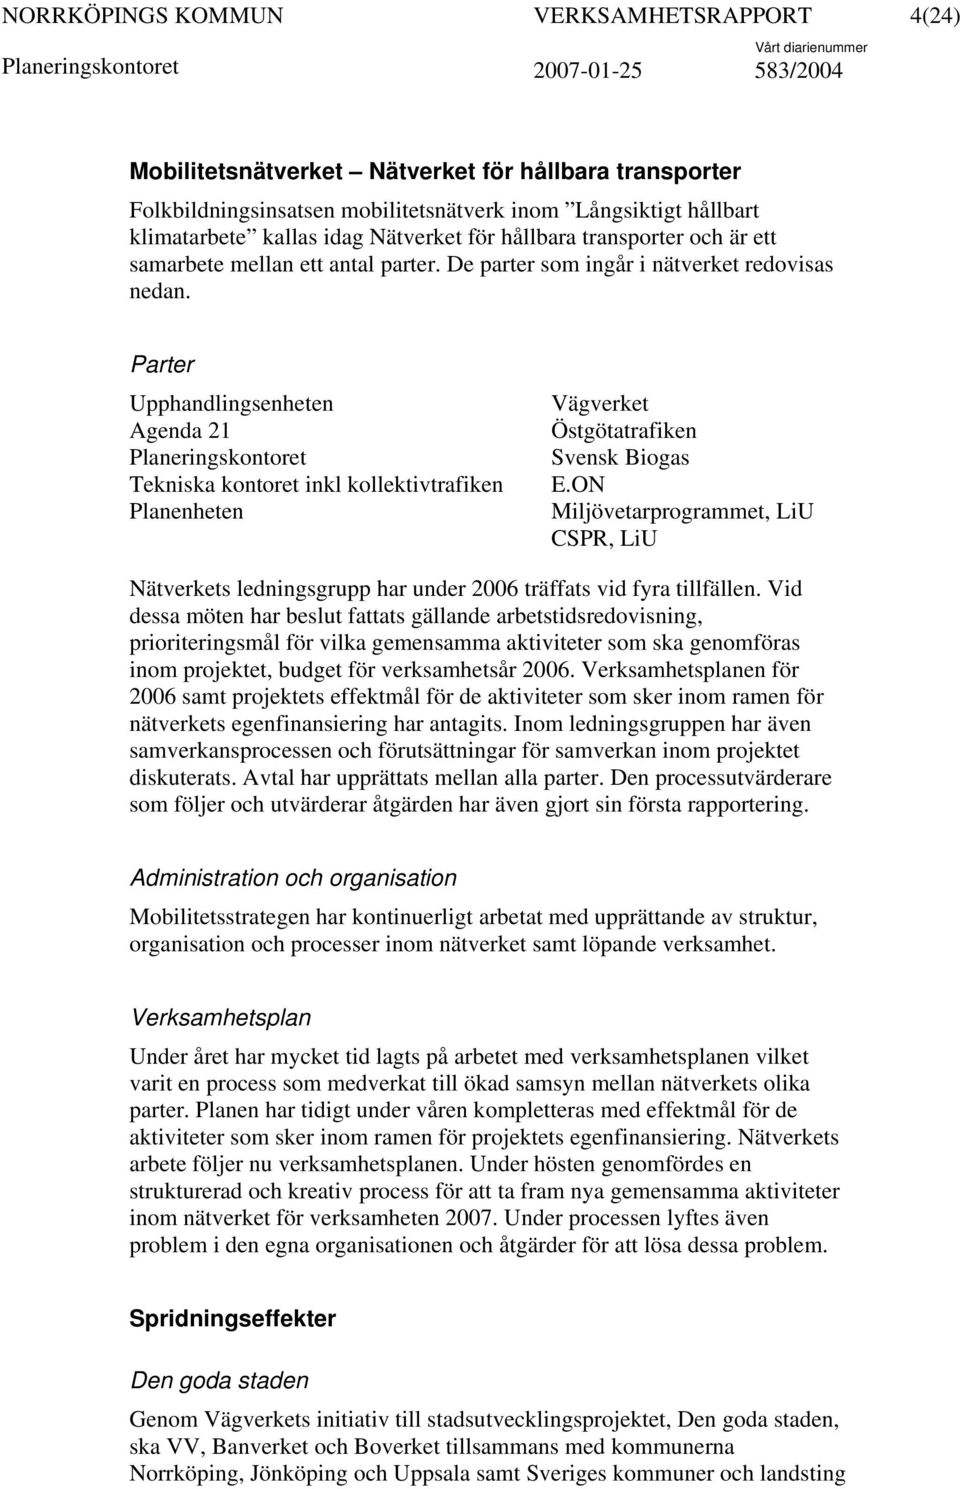 Parter Upphandlingsenheten Agenda 21 Planeringskontoret Tekniska kontoret inkl kollektivtrafiken Planenheten Vägverket Östgötatrafiken Svensk Biogas E.